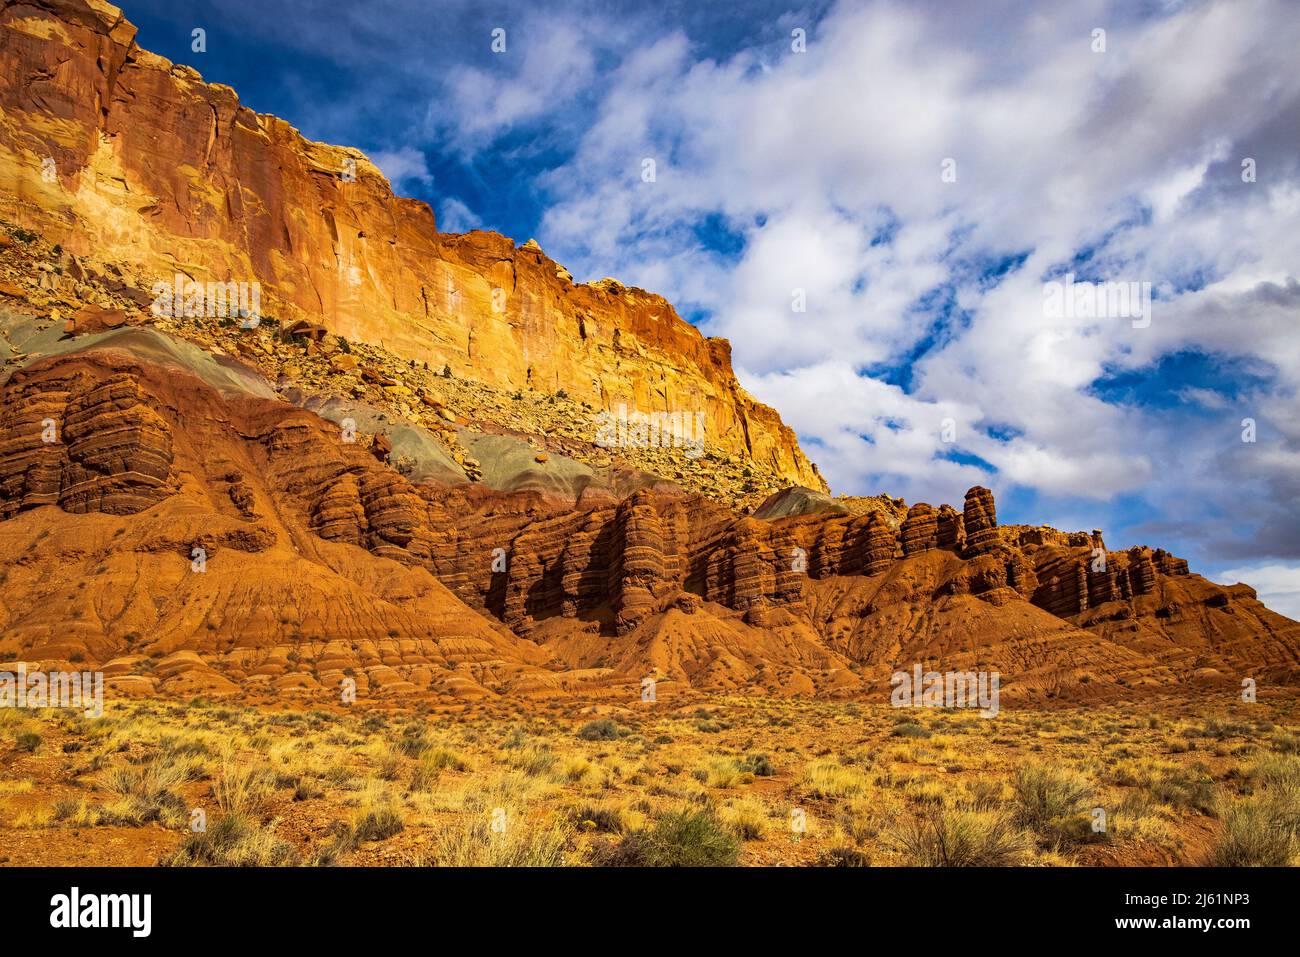 Il s'agit d'une vue sur les imposantes falaises de grès, comme on l'a vu le long de la zone de 'Scenic Drive' du parc national de Capitol Reef, Torrey, Wayne County, Utah, États-Unis. Banque D'Images